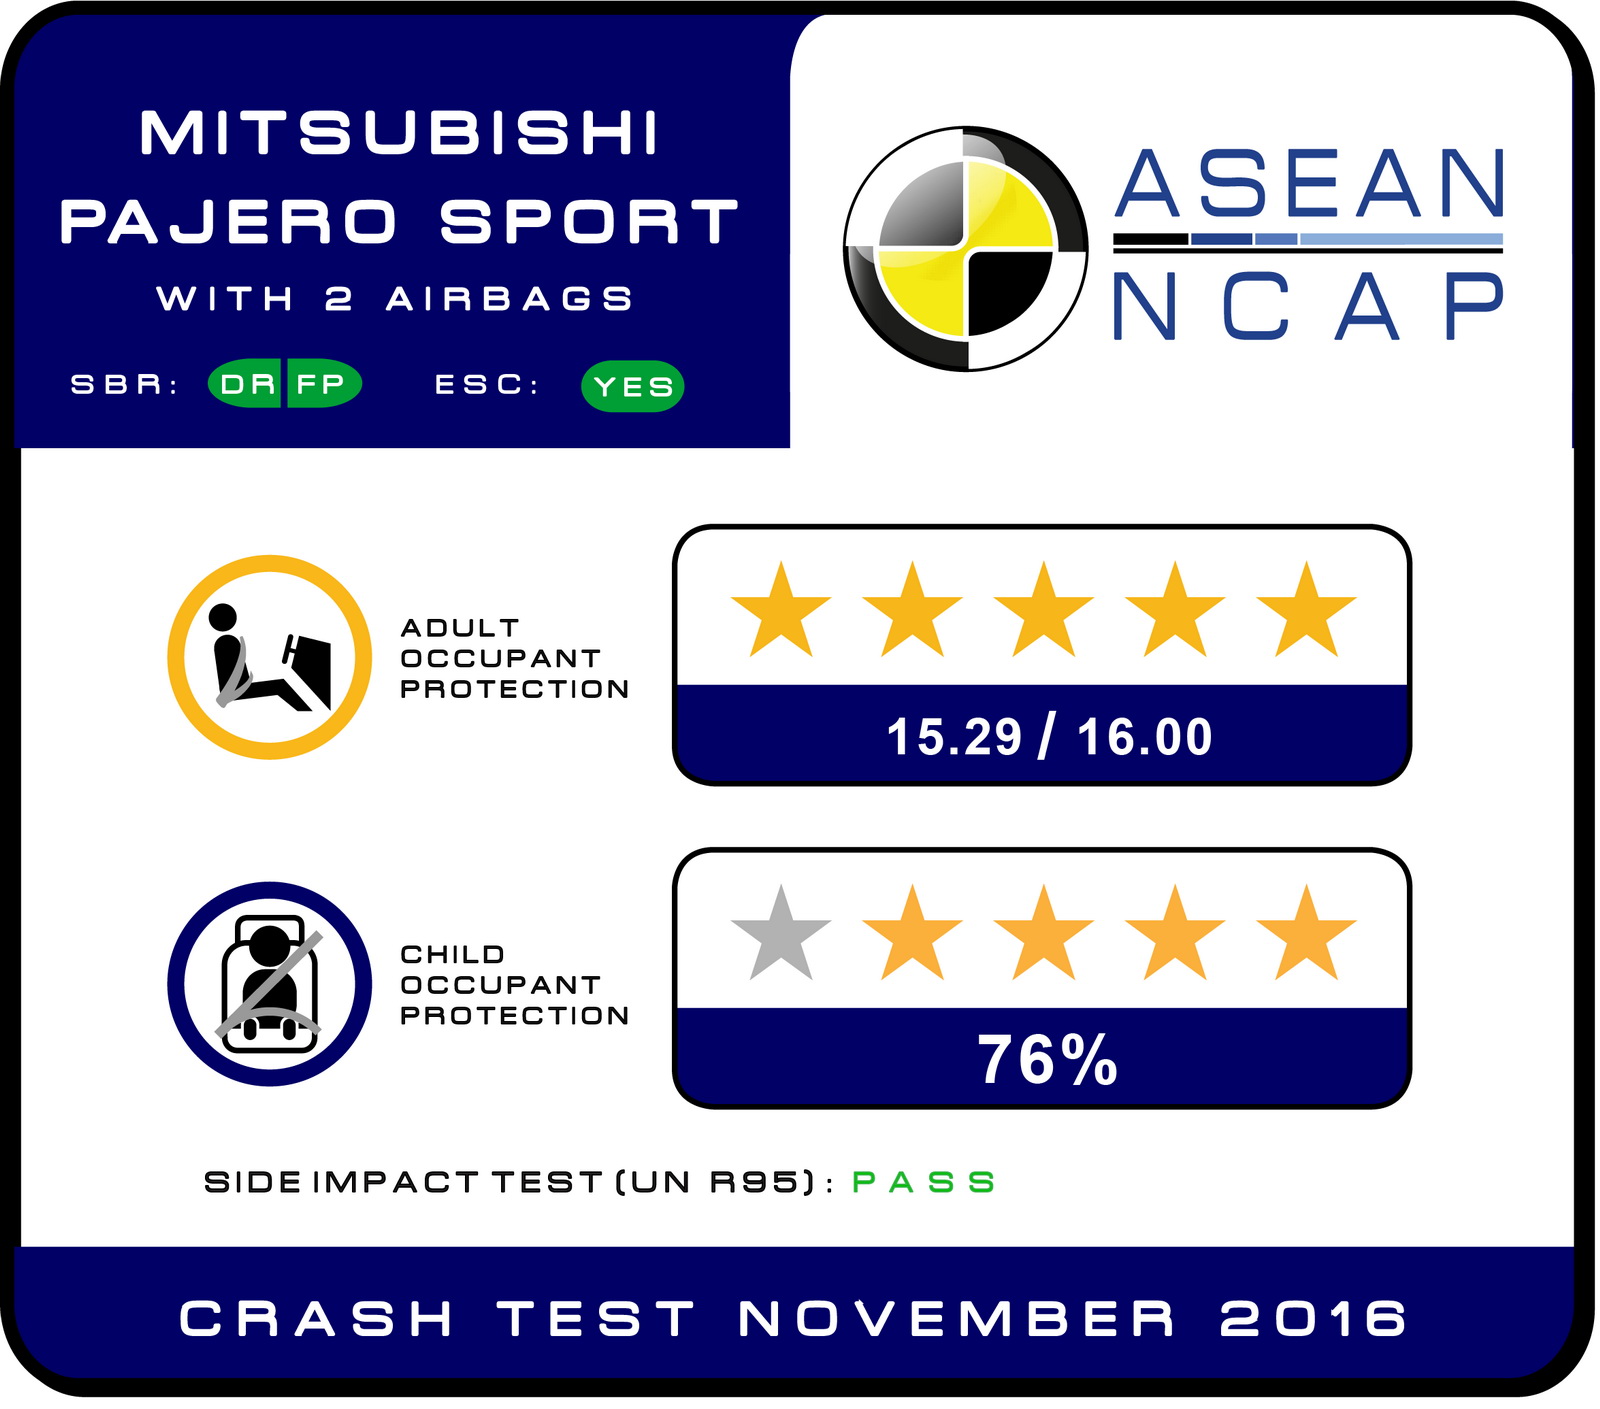 International, mitsubishi pajero sport crash test result: Mitsubishi Pajero Sport Cetak 5 Bintang di ASEAN NCAP